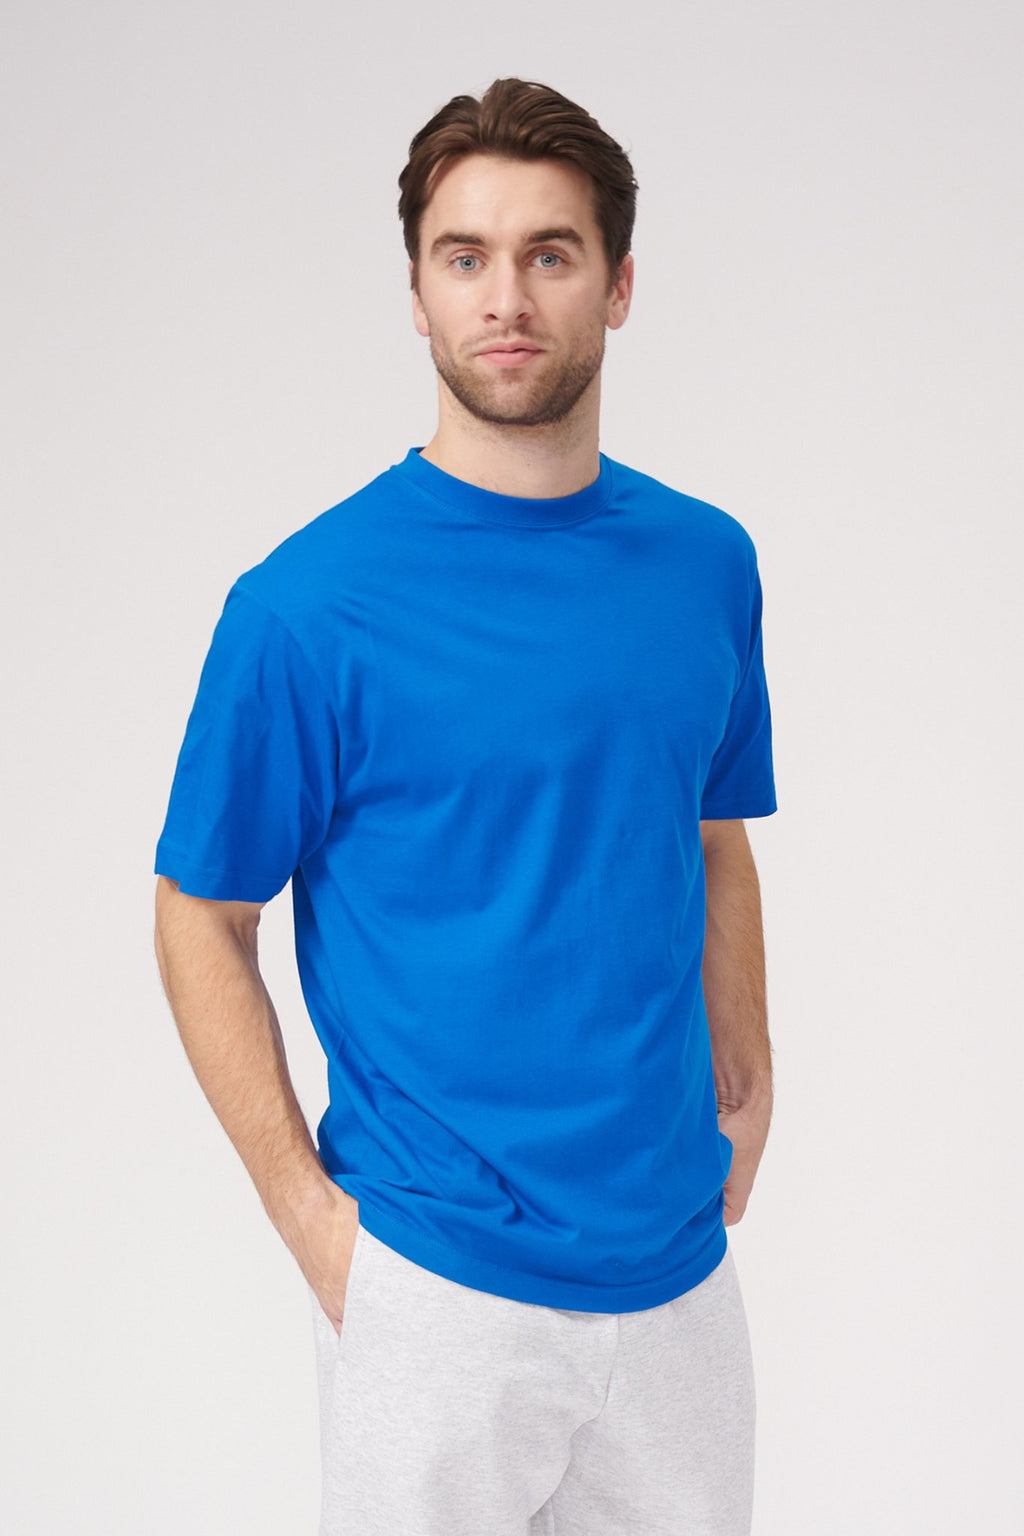 T-shirt surdimensionné - bleu suédois